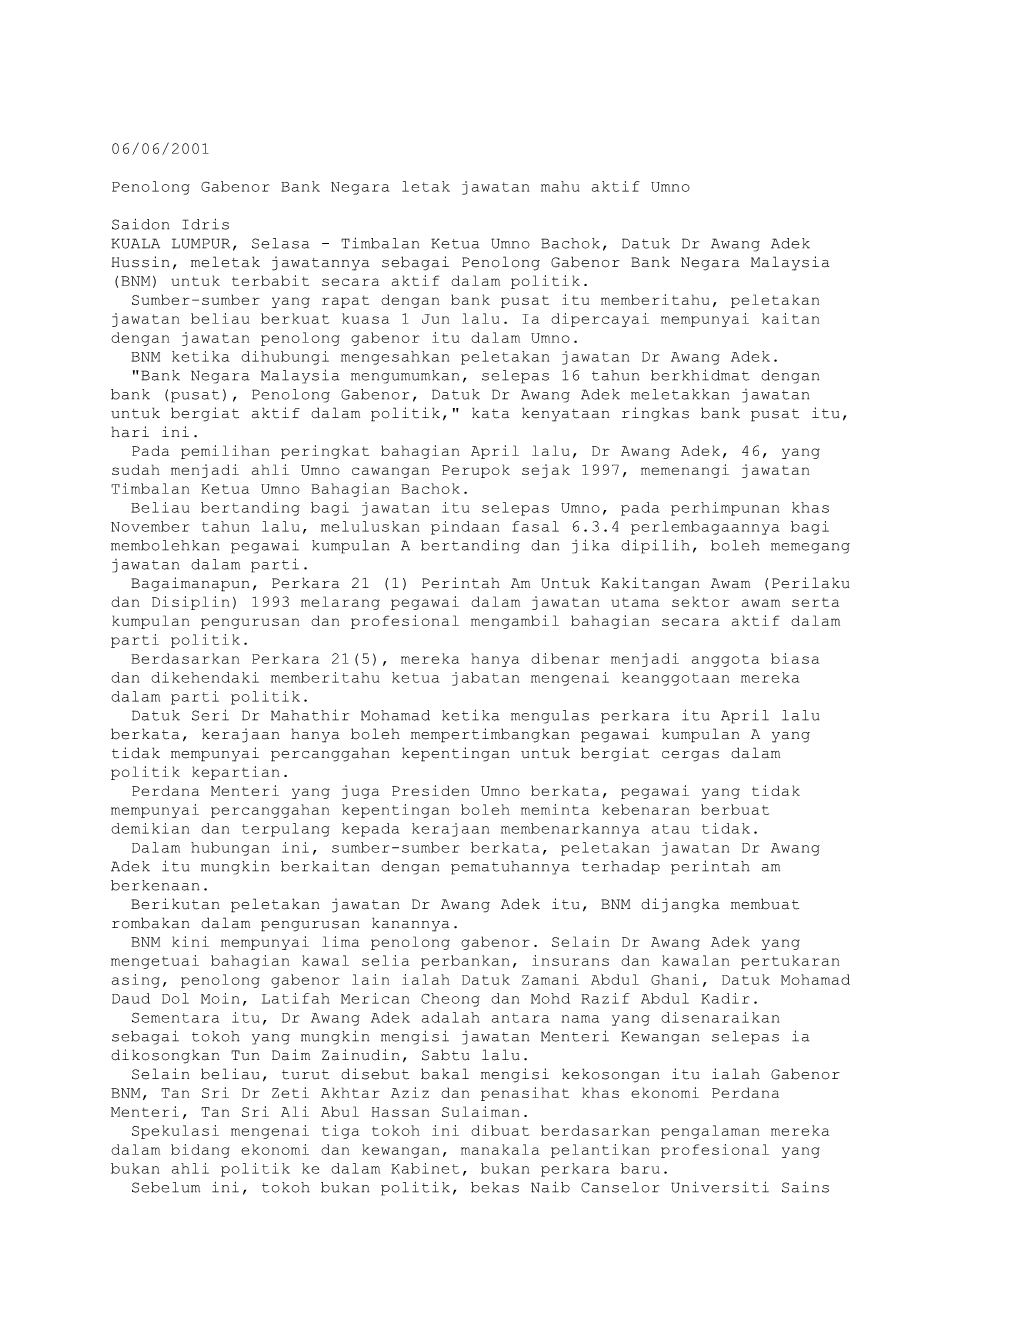 Penolong Gabenor Bank Negara Letak Jawatan Mahu Aktif Umno (BH 06/06/2001)